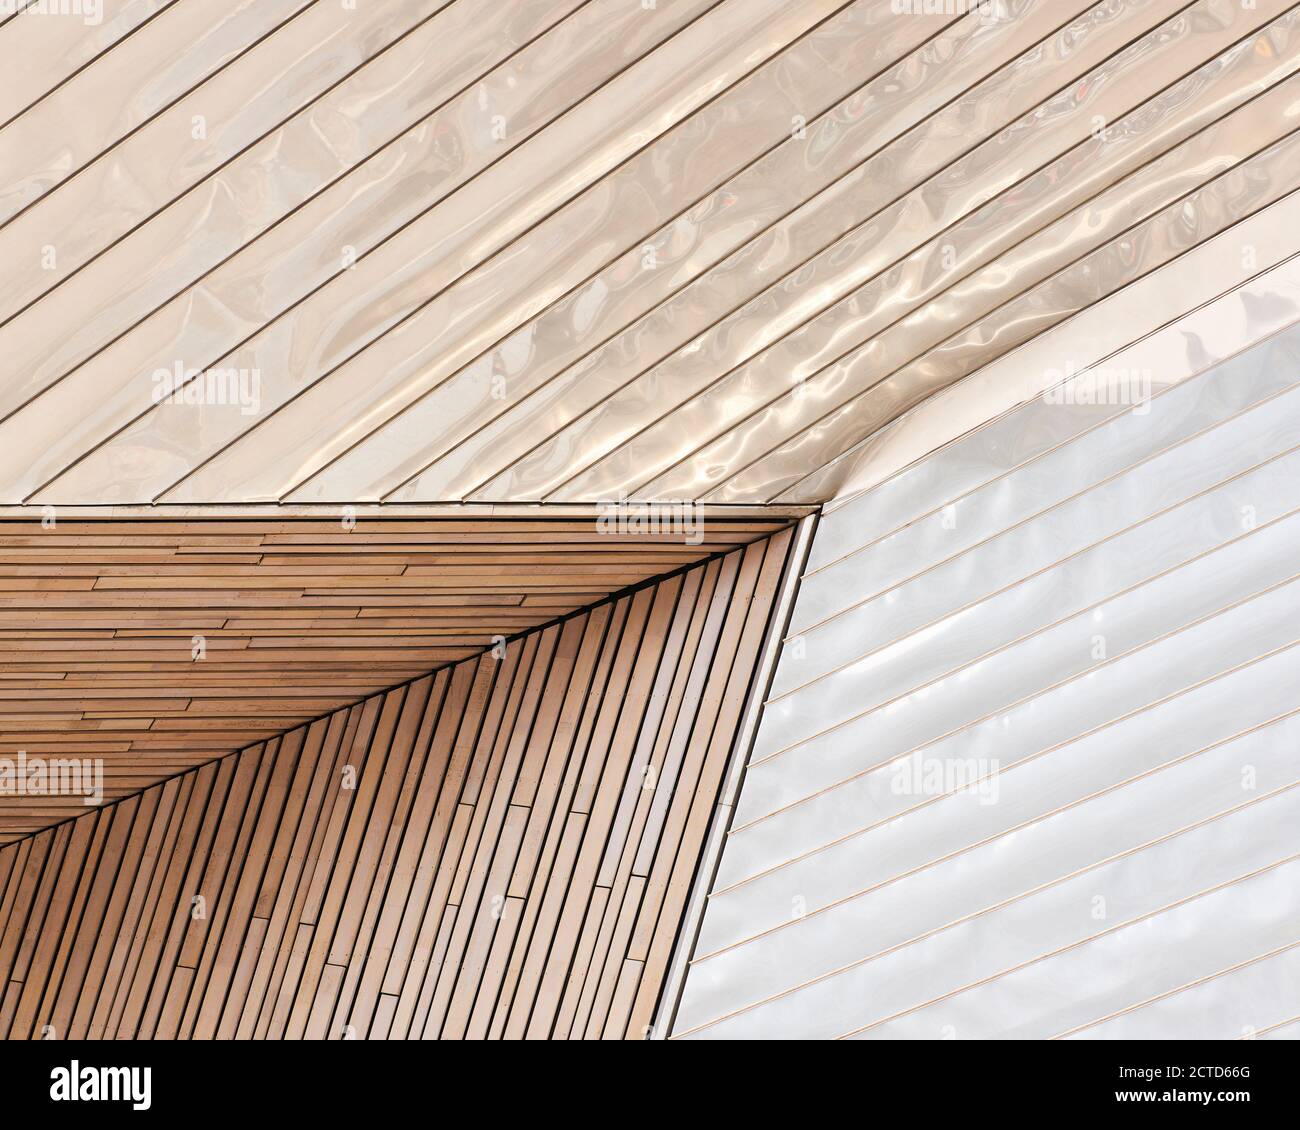 Äußere Detail von Rotterdam Centraal Station, Niederlande. Fertiggestellt im Jahr 2014 nach einer umfangreichen Umgestaltung durch ein Team von niederländischen Firmen Benthem Crouwel Architects, MVSA Architects und West 8. Stockfoto